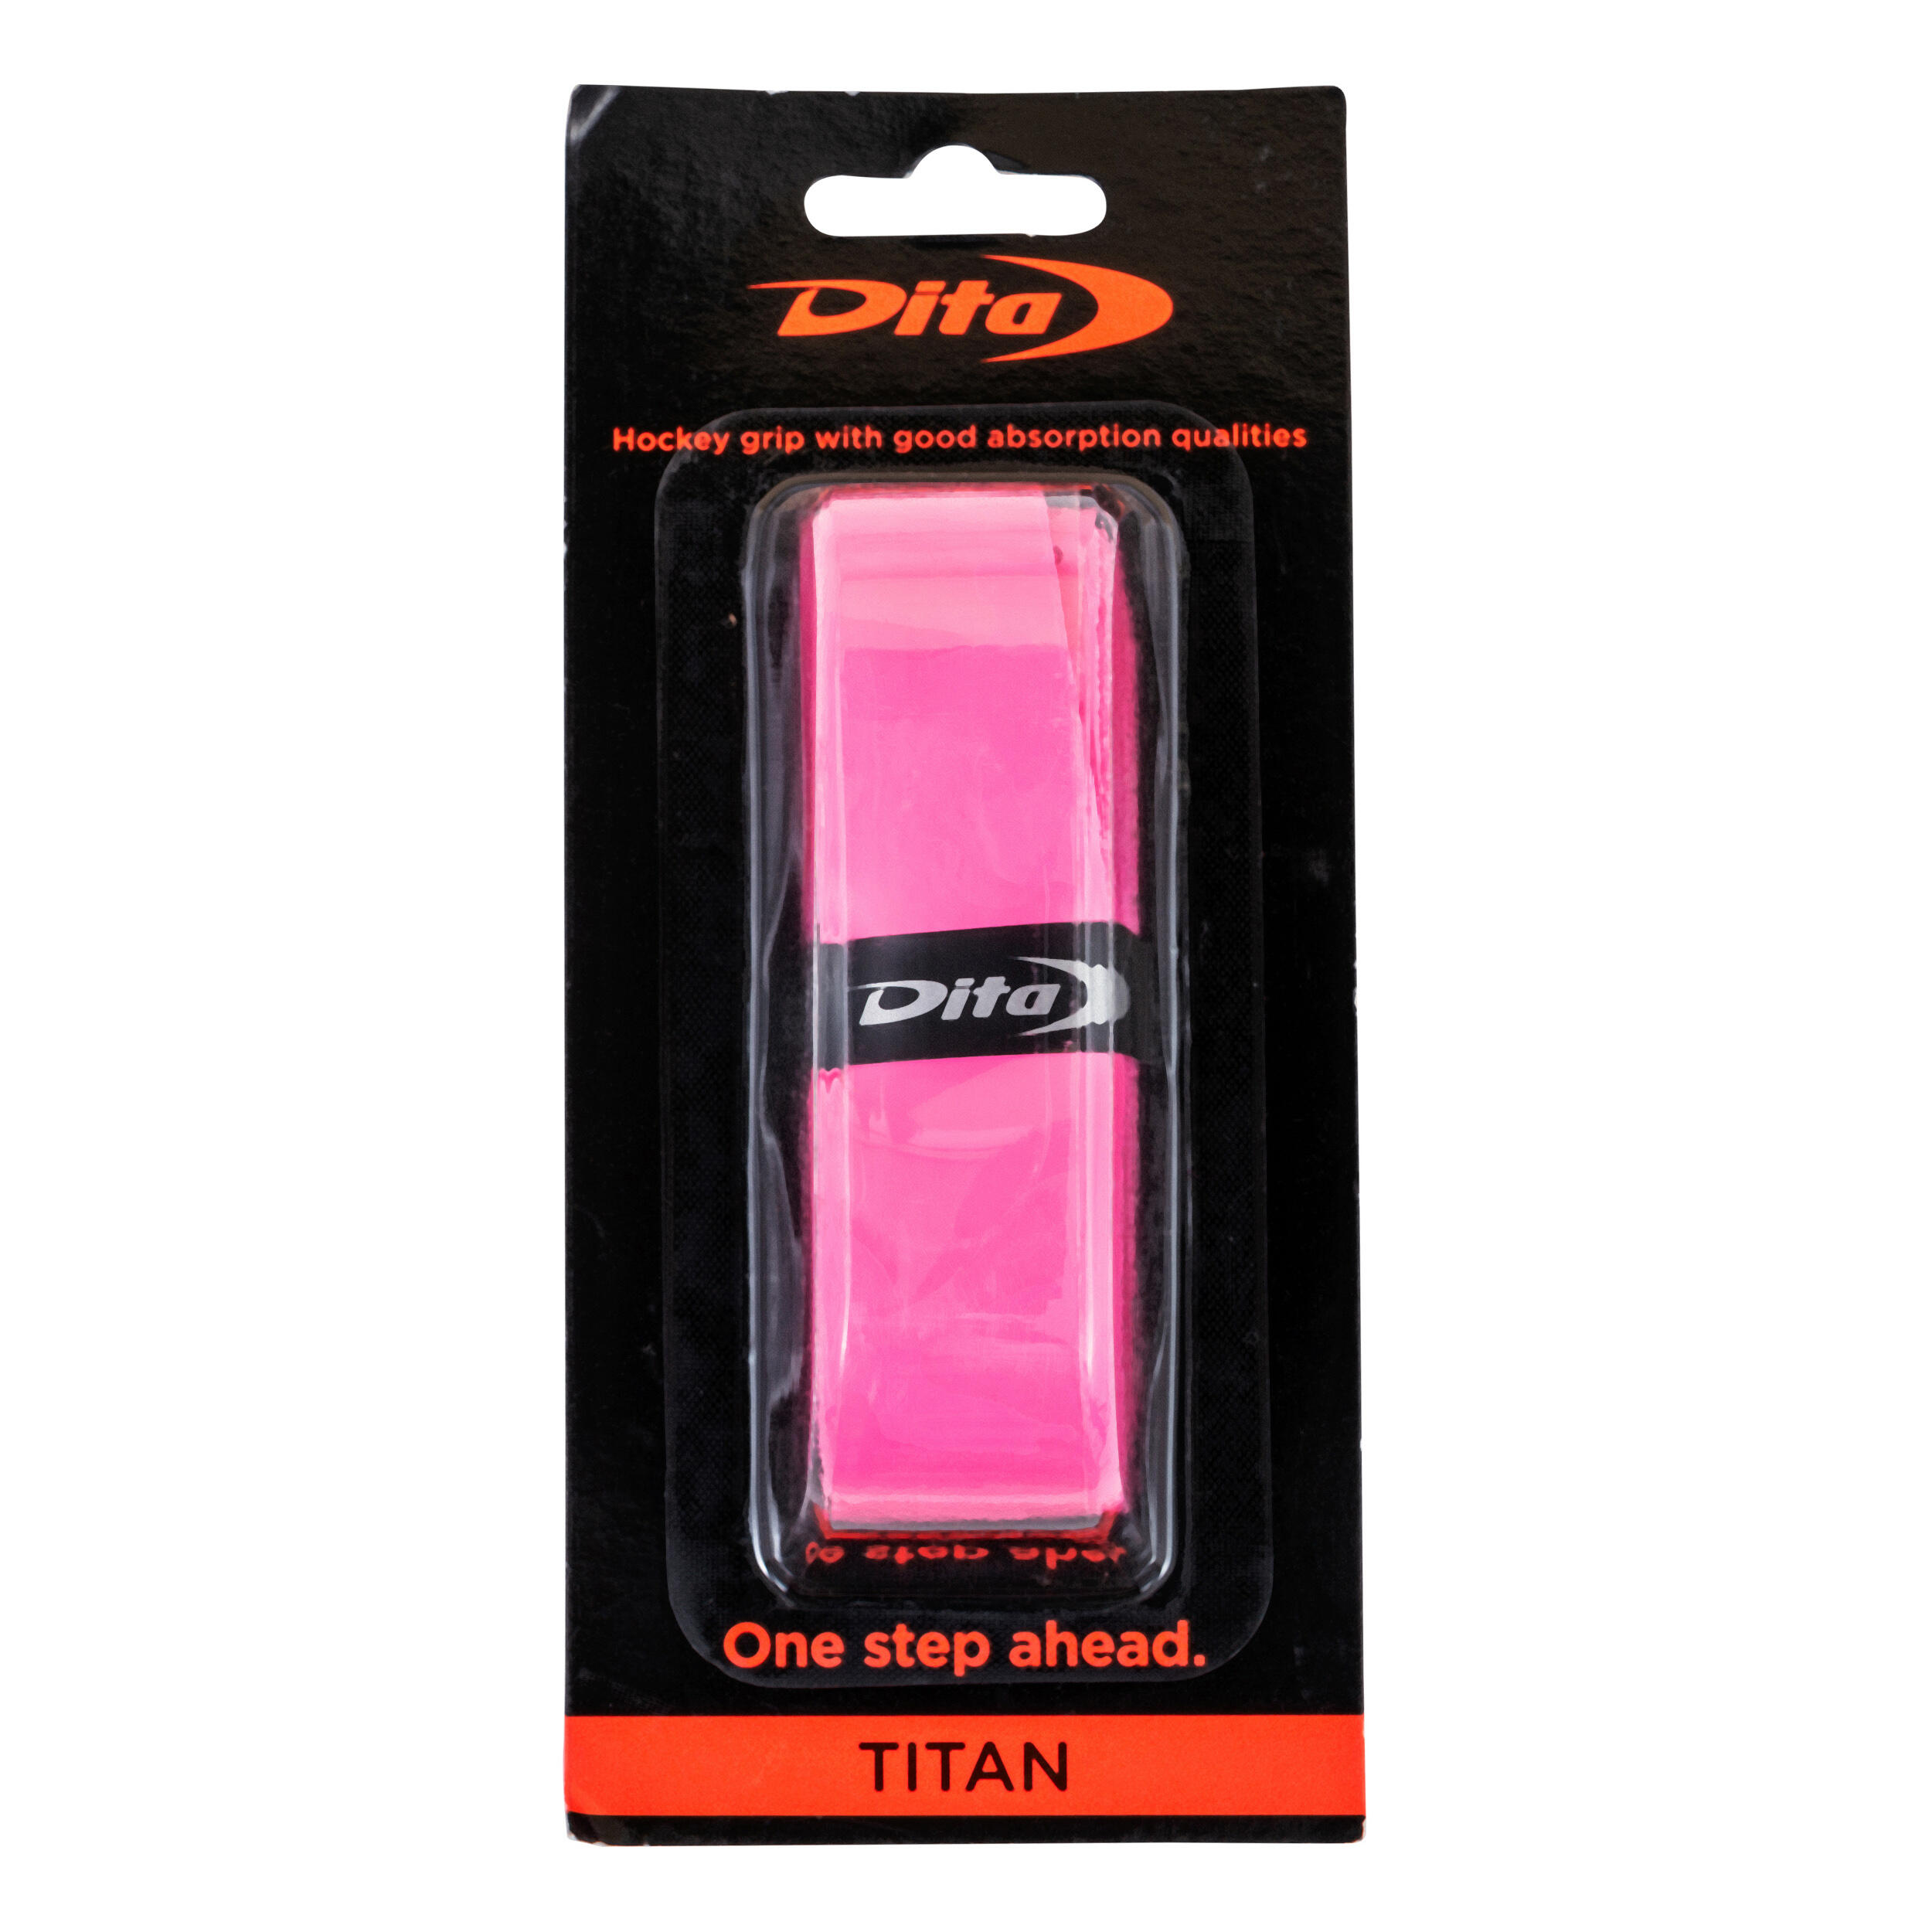 DITA Field Hockey Grip Titan - Pink